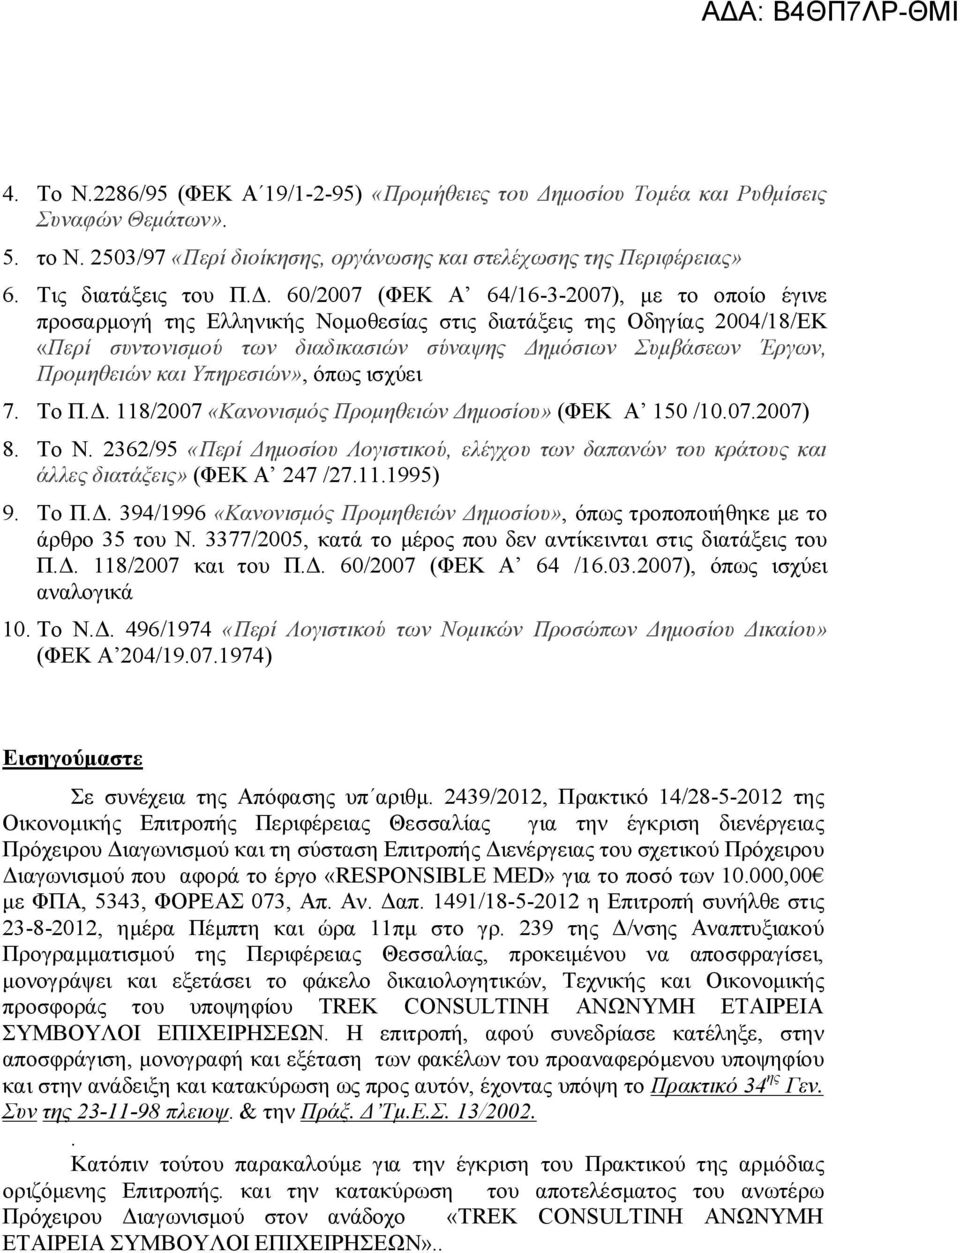 60/2007 (ΦΕΚ Α 64/16-3-2007), με το οποίο έγινε προσαρμογή της Ελληνικής Νομοθεσίας στις διατάξεις της Οδηγίας 2004/18/ΕΚ «Περί συντονισμού των διαδικασιών σύναψης Δημόσιων Συμβάσεων Έργων,